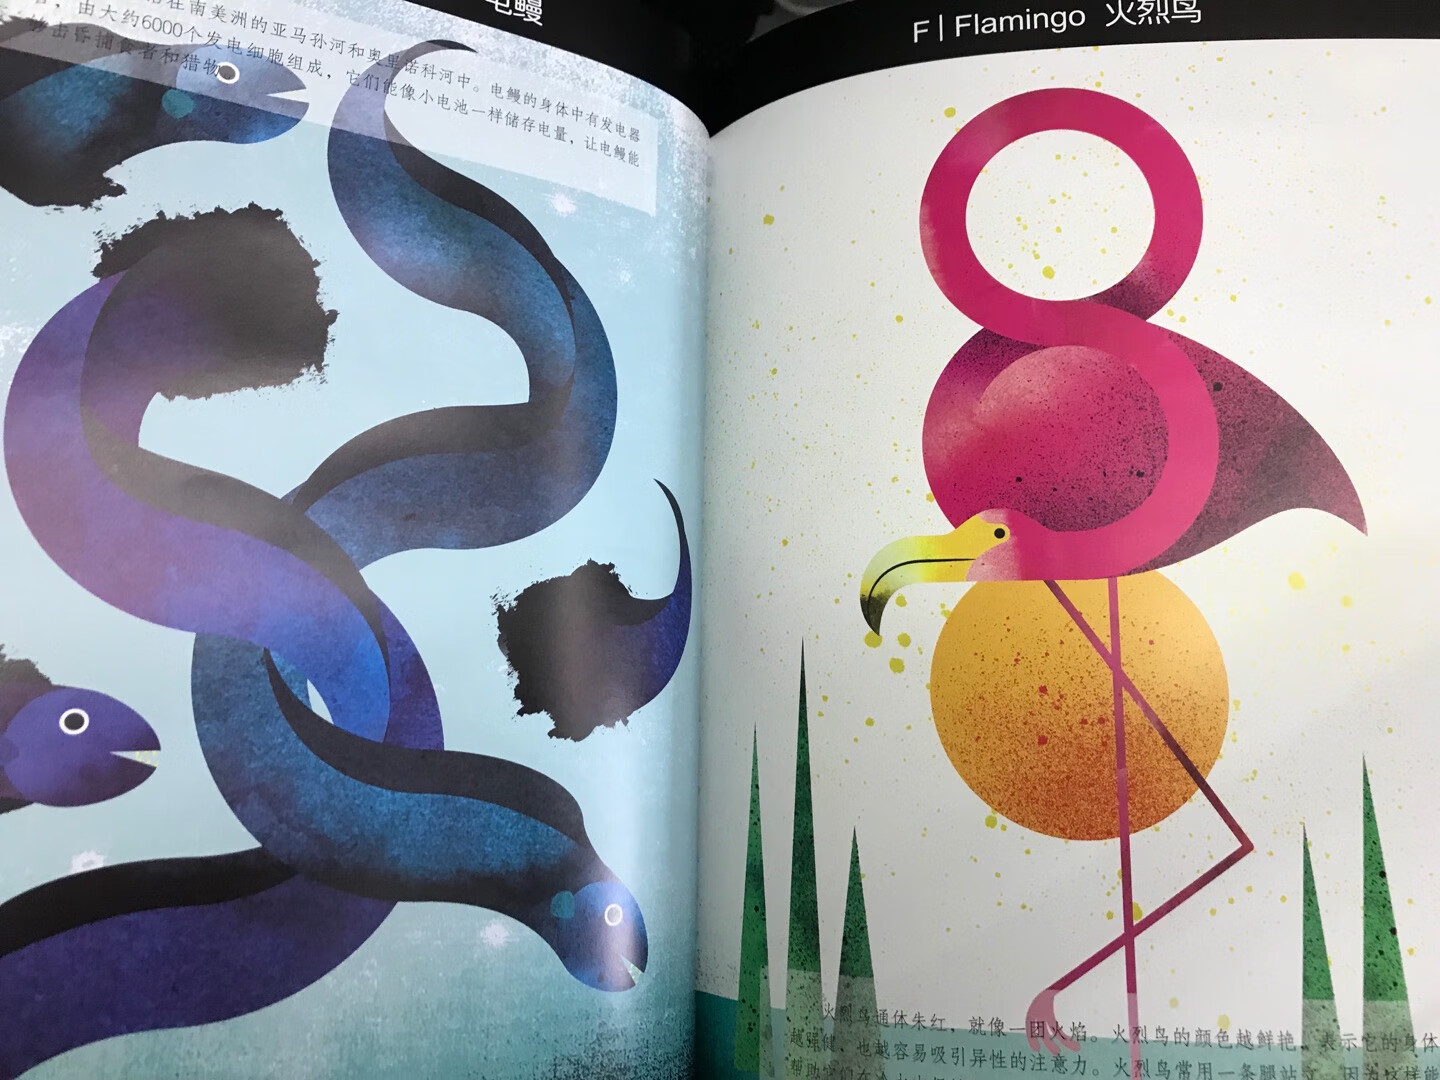 这本书是继《世界趣味版》之后我最喜欢的马克马丁的一本书。作者选择了偏平面的画风，将动物形态特征进行艺术加工和变形，选择有强烈视觉冲击力的配色，真的是每一幅画都让人觉得特别抓眼球。最喜欢极乐鸟那一幅，之前在《世界神奇动物》里面看到过极乐鸟，几乎是一眼就喜欢上啦~